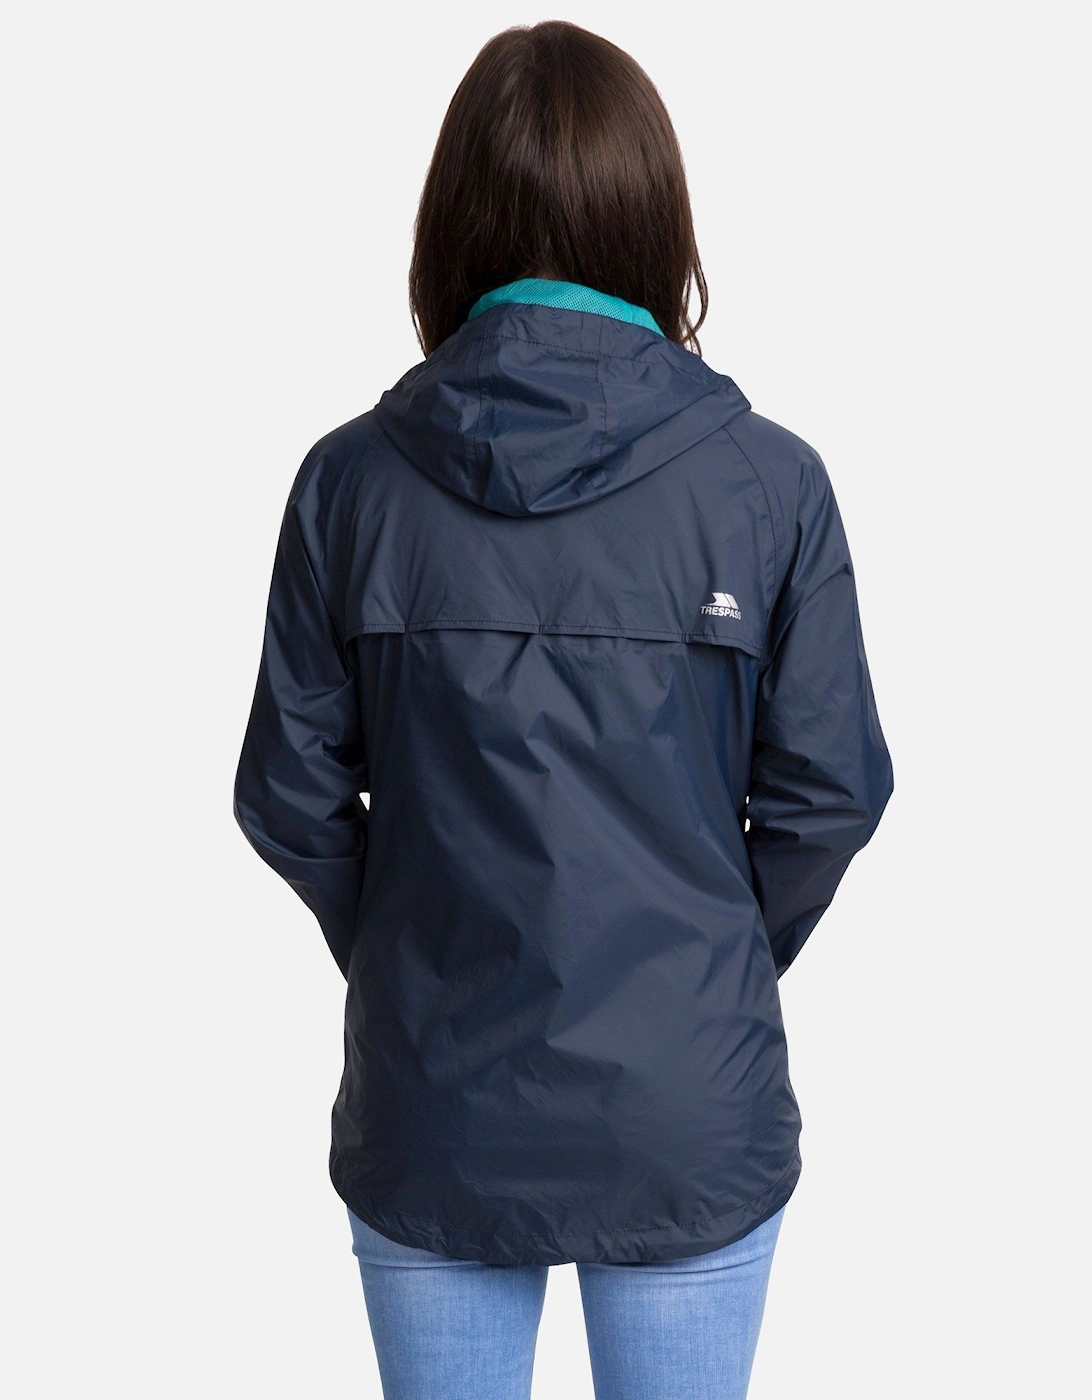 Womens/Ladies Qikpac Waterproof Packaway Shell Jacket